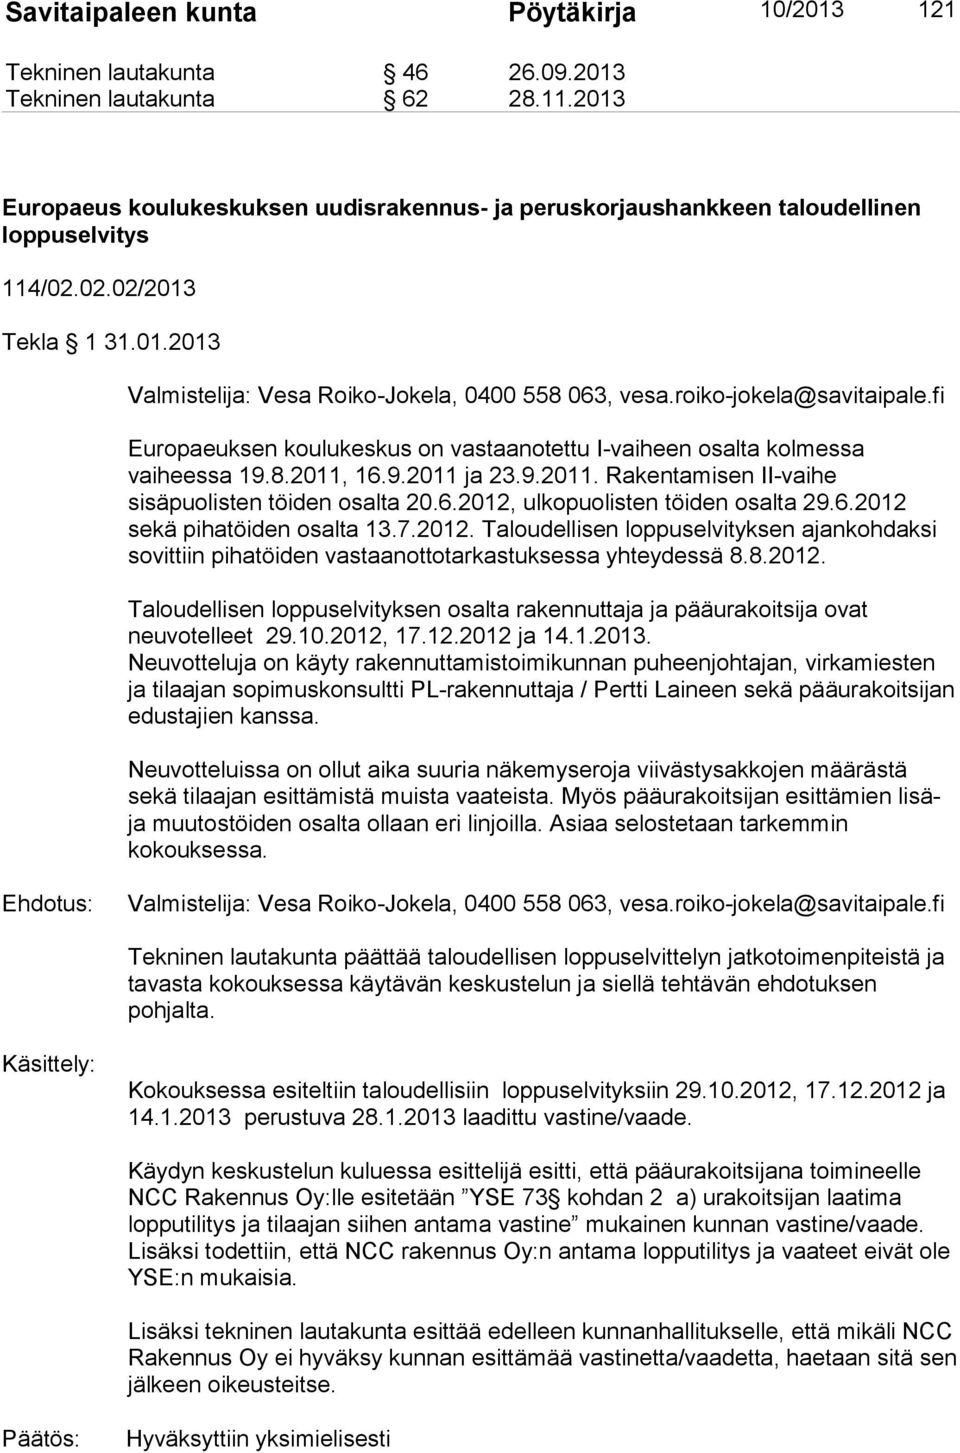 roiko-jokela@savitaipale.fi Europaeuksen koulukeskus on vastaanotettu I-vaiheen osalta kolmessa vaiheessa 19.8.2011, 16.9.2011 ja 23.9.2011. Rakentamisen II-vaihe sisäpuolisten töiden osalta 20.6.2012, ulkopuolisten töiden osalta 29.